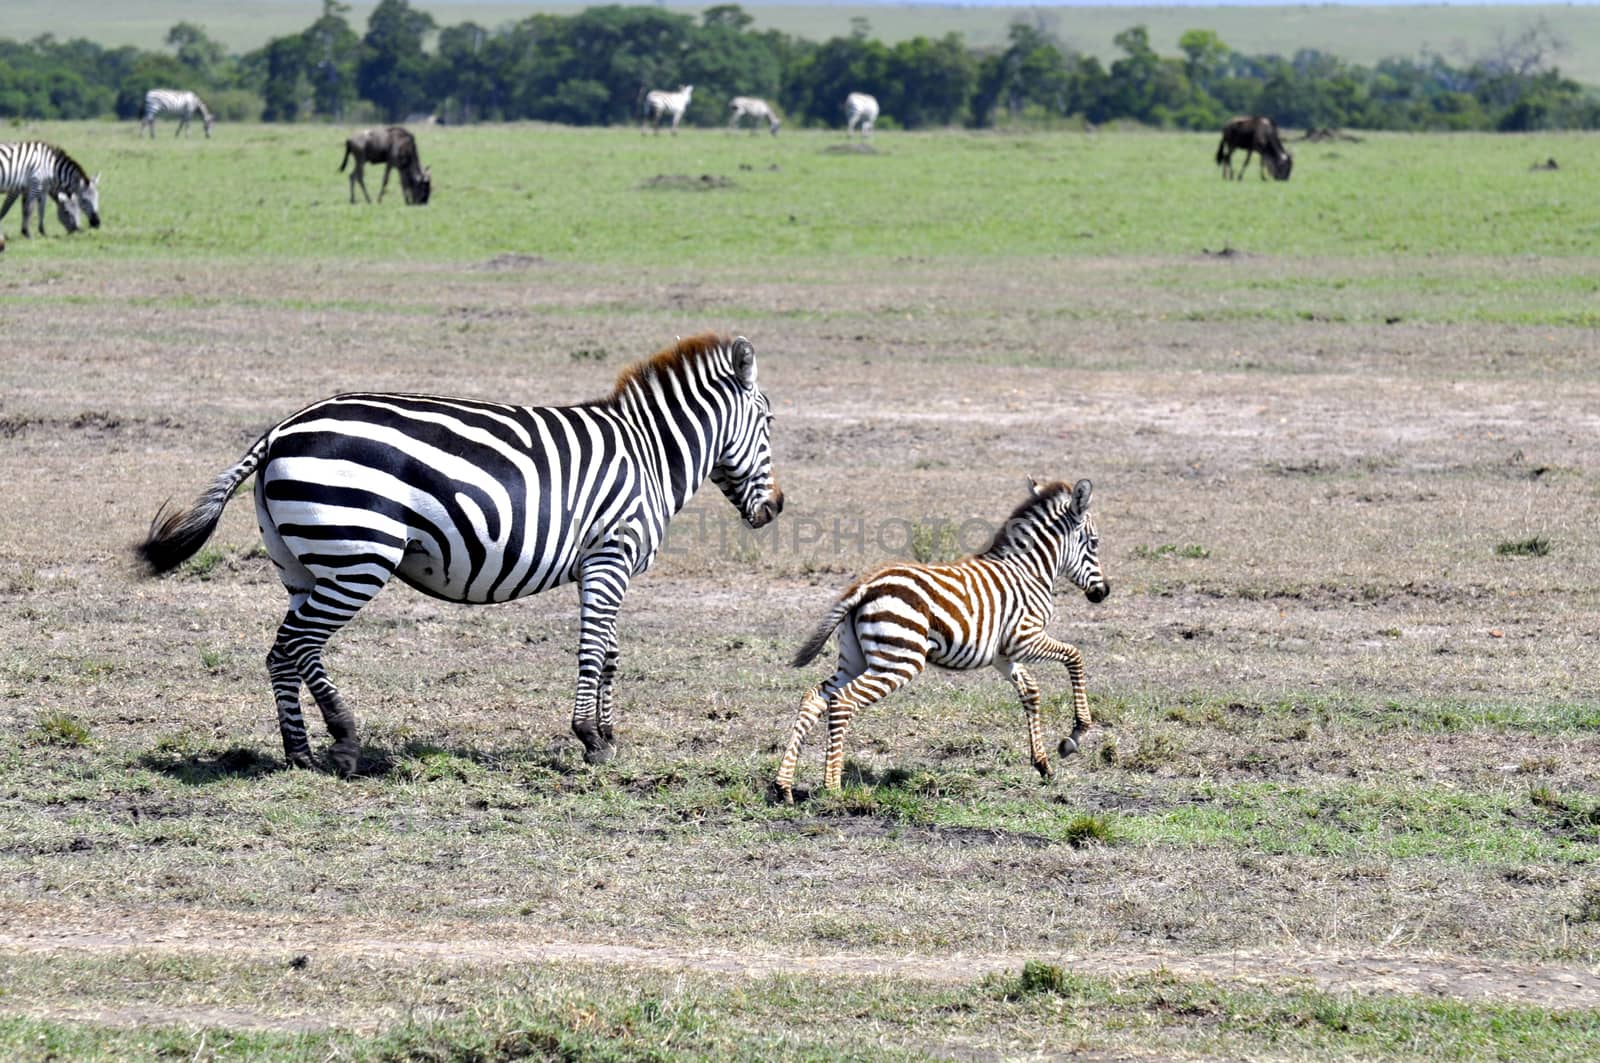 Zebras of Masai Mara by MichaelMou85